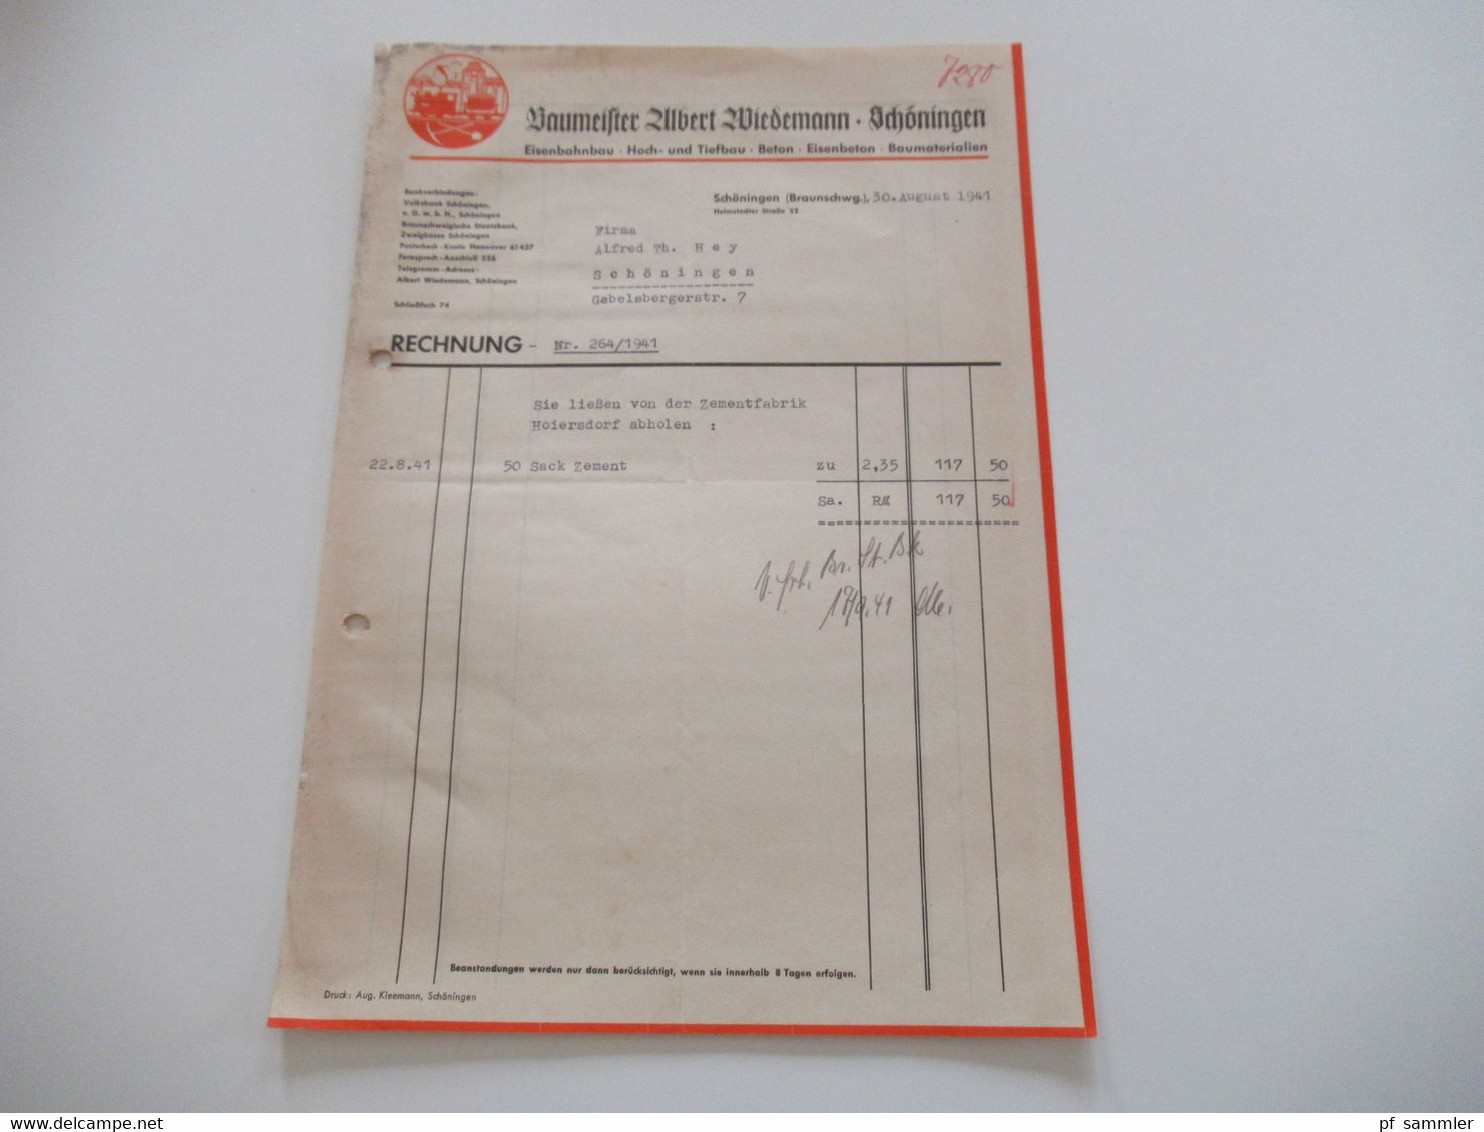 3.Reich Dokument 1941 Rechnung Baumeister Albert Wiedemann Schöningen (Braunschweig) über Tonrohre und 50 Sack Zement